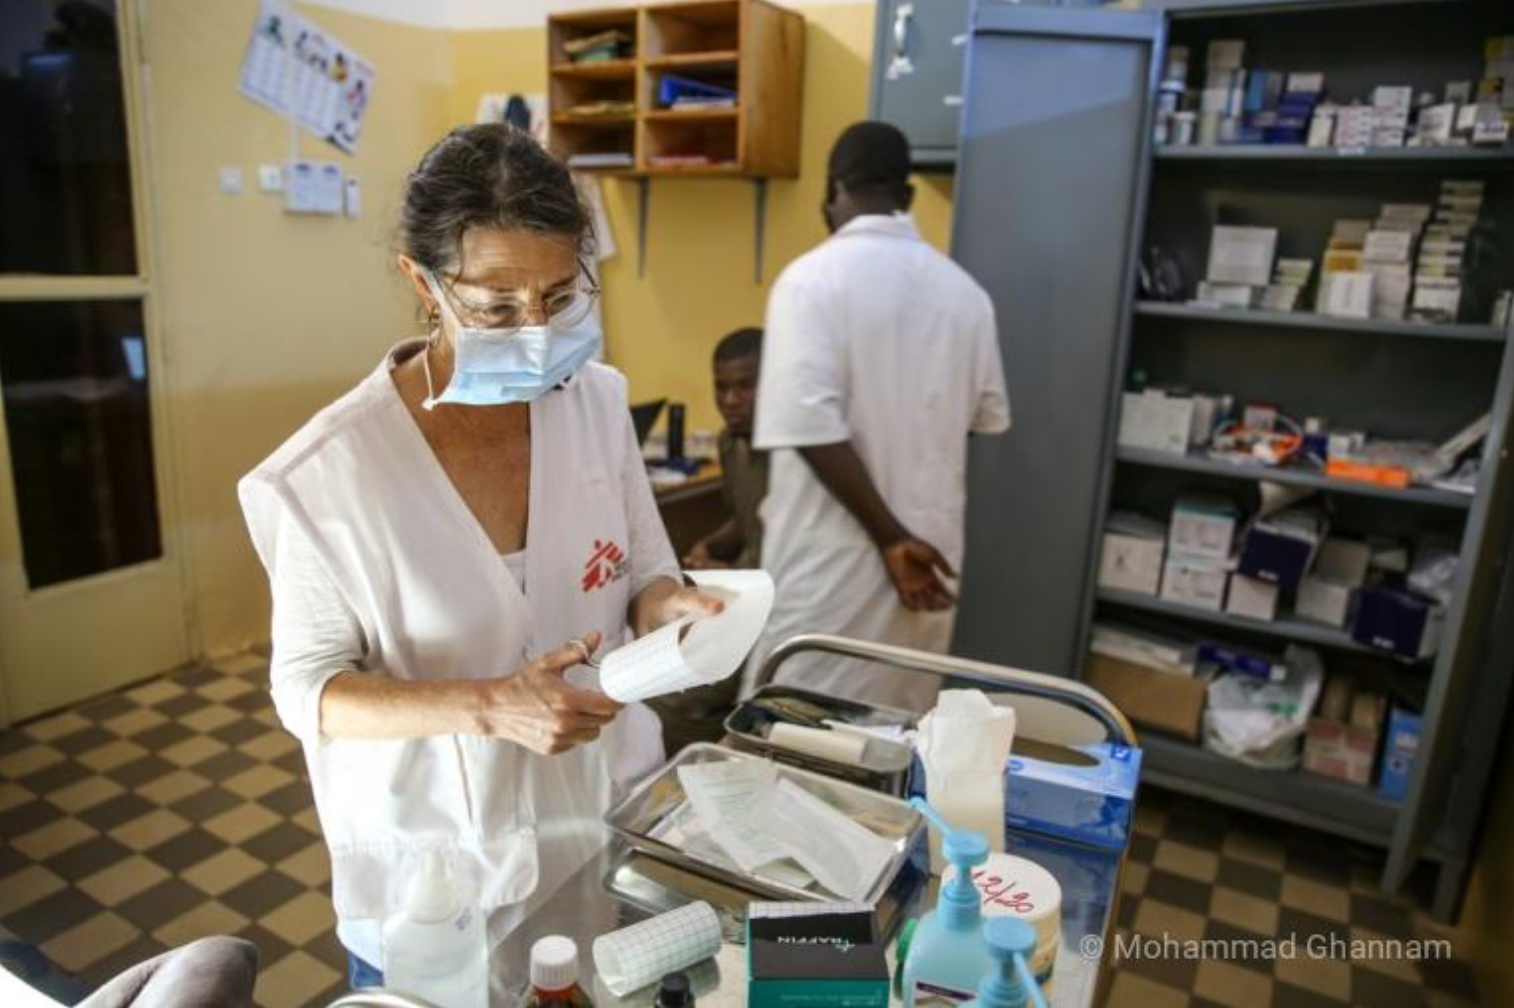 Médecins Sans Frontières mobilisée à Bamako aux côtés du ministère de la Santé malien